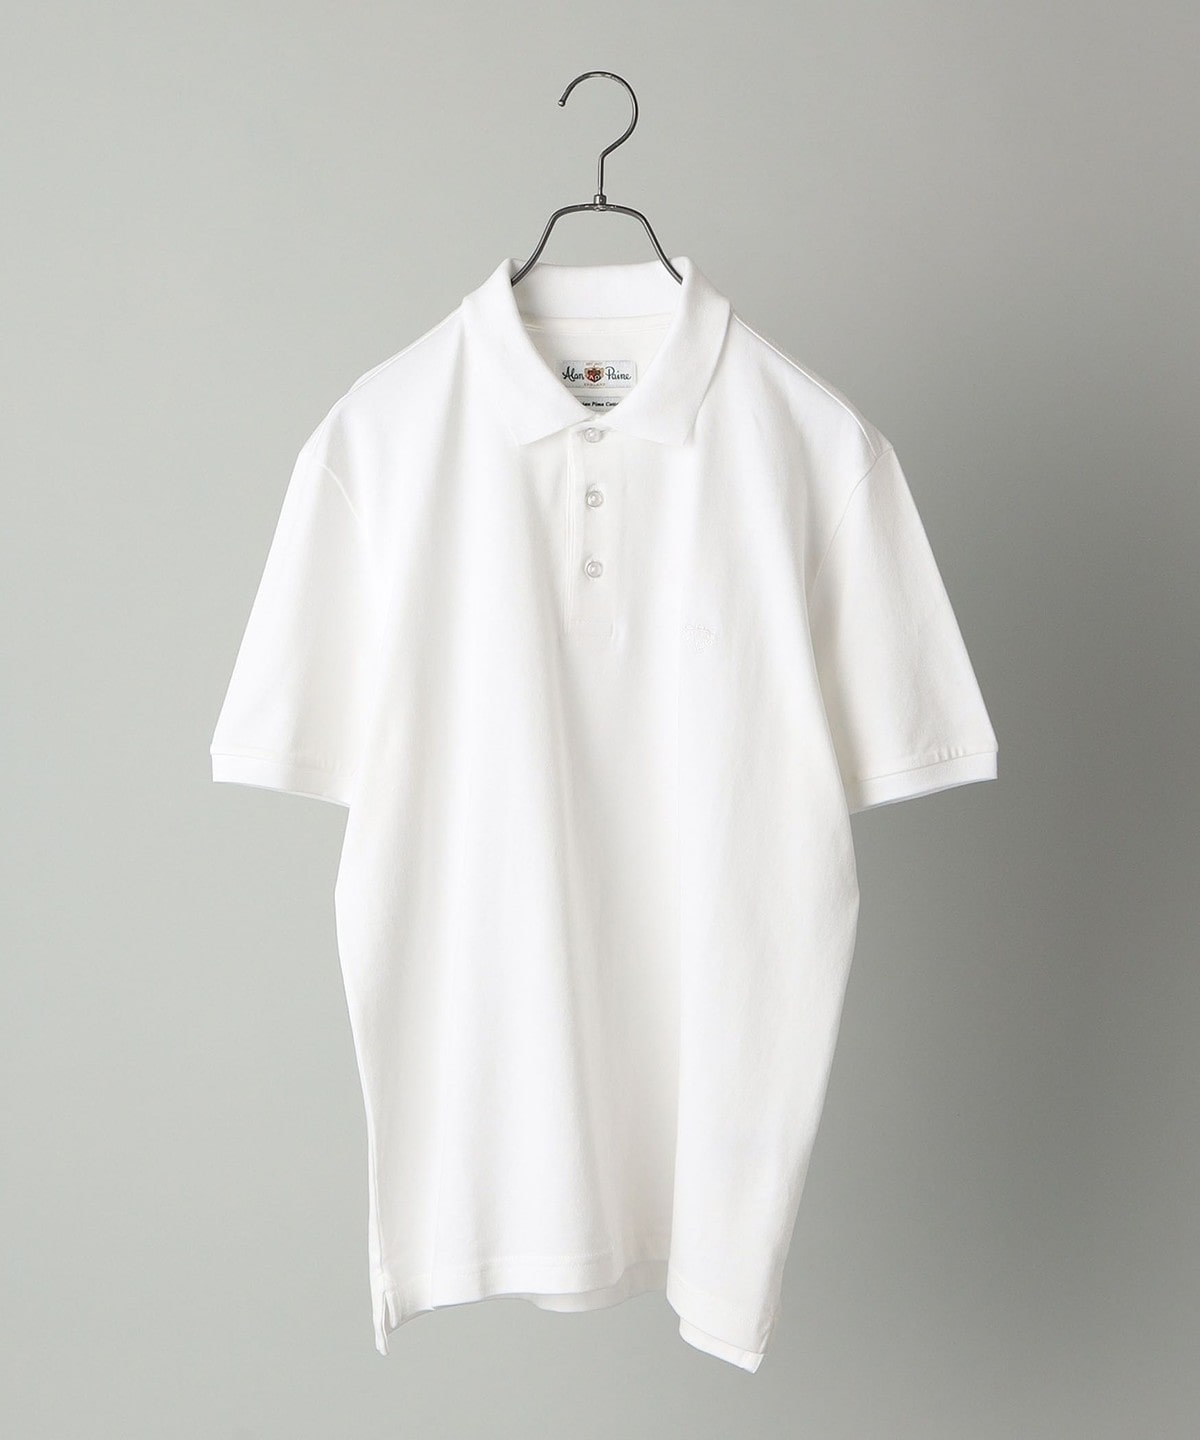 ALANPAINE: ピケ ショートスリーブ ポロシャツ ホワイト